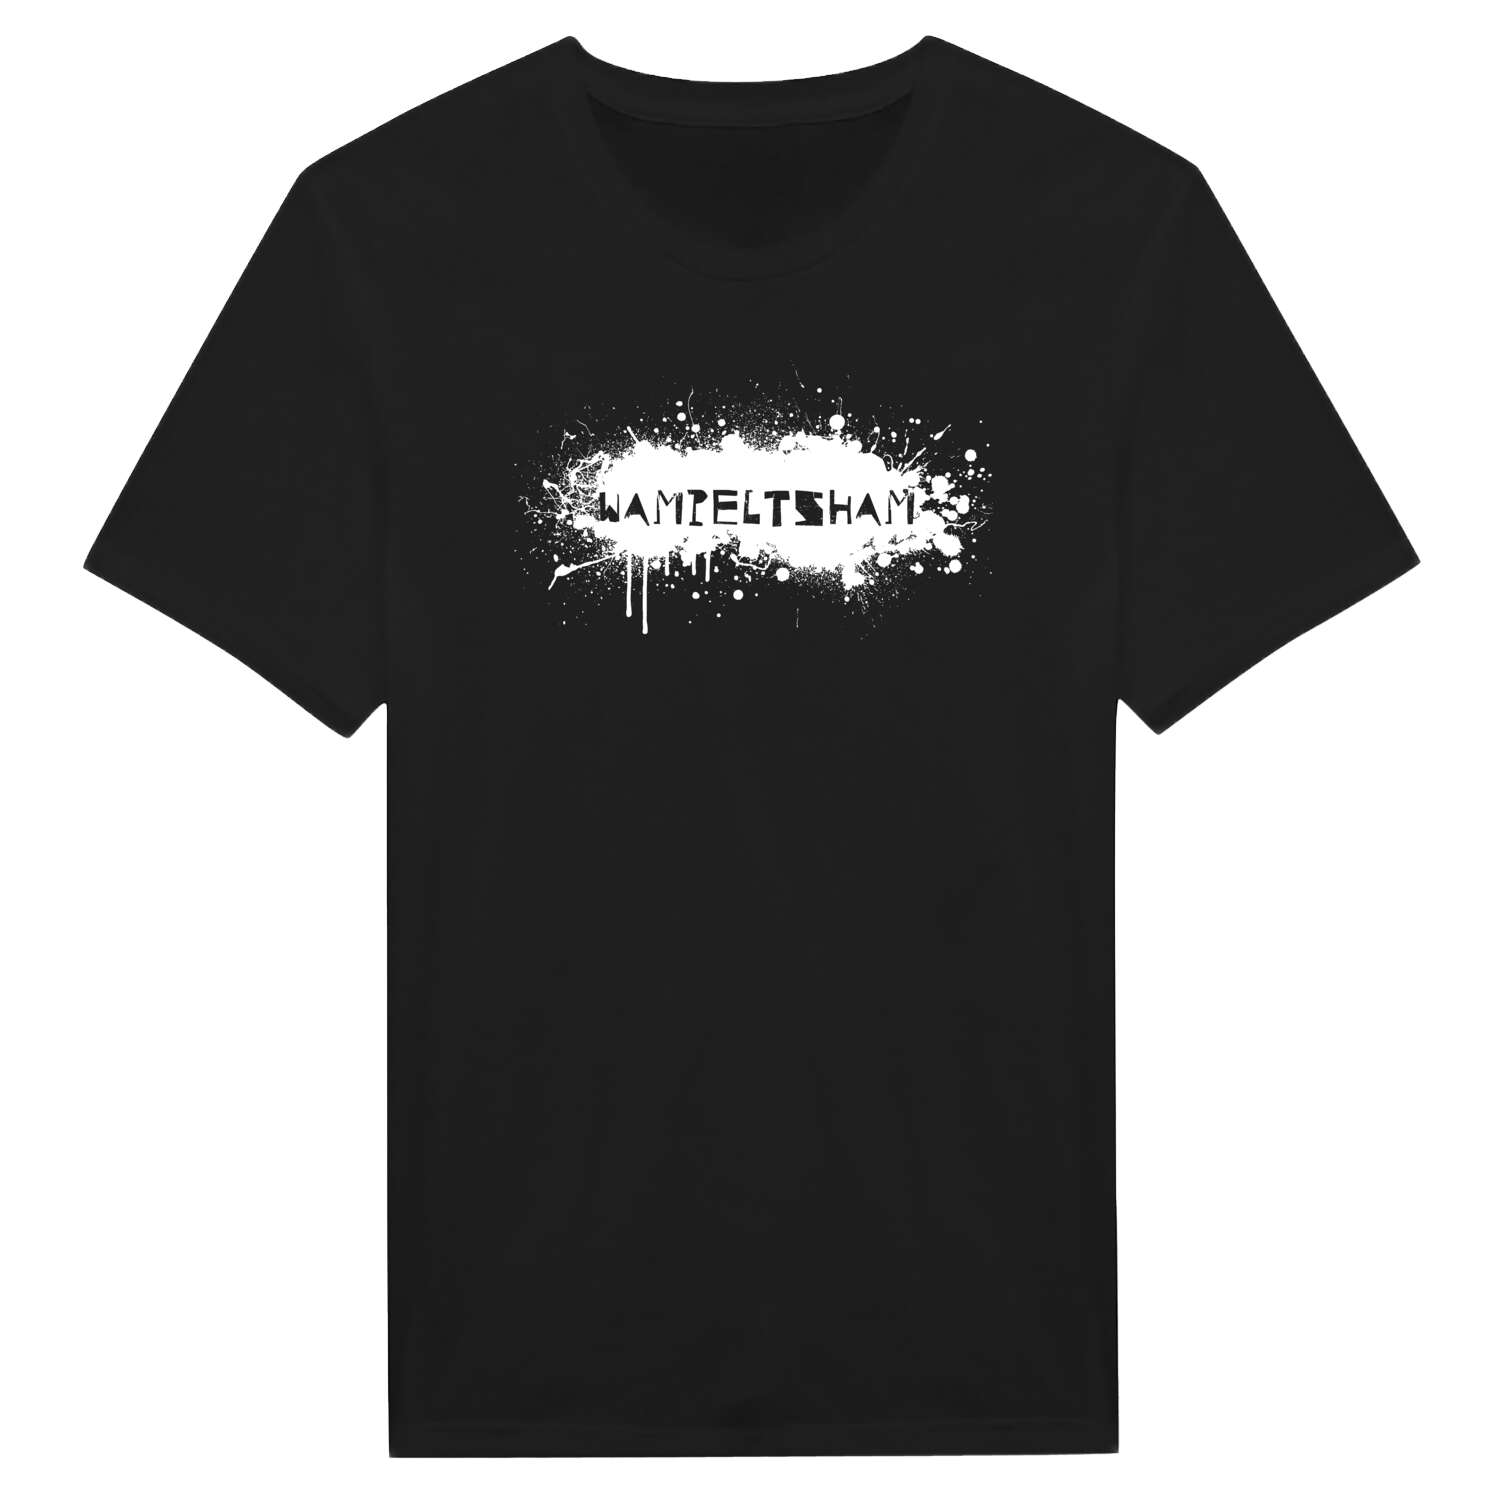 Wampeltsham T-Shirt »Paint Splash Punk«